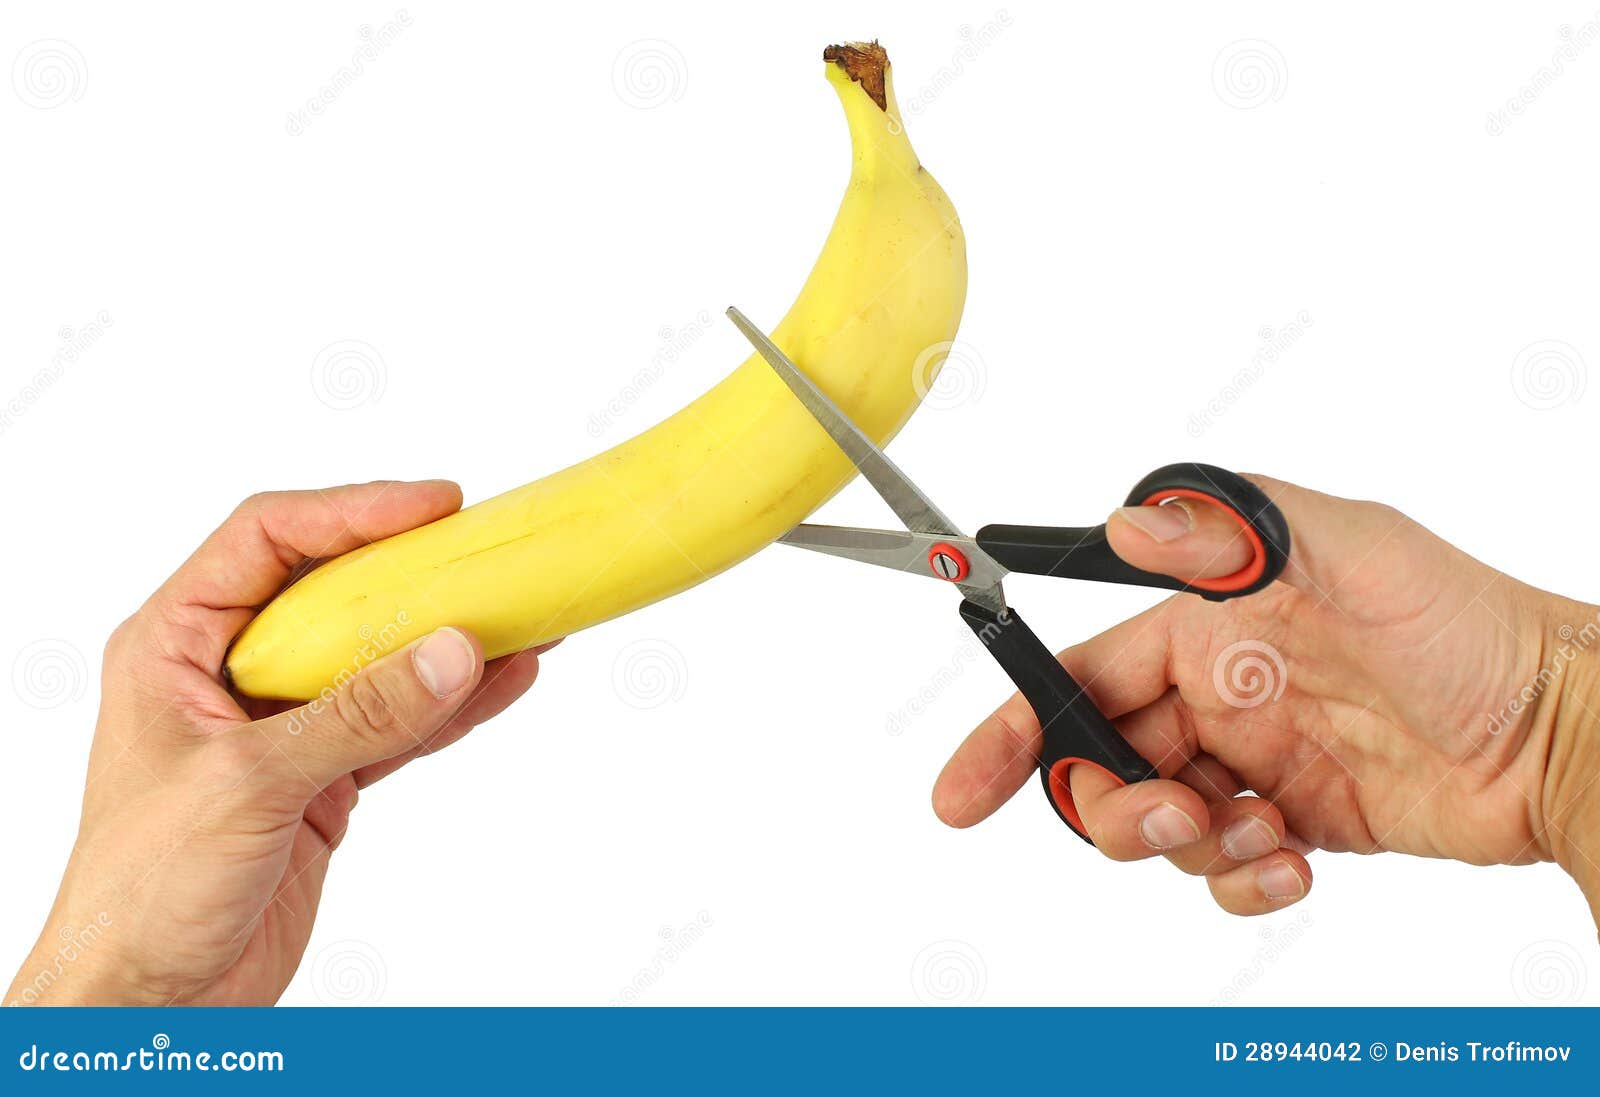 切香蕉神器 香蕉切片器 水果分割 創意切香蕉 香蕉片 香腸片器 熱狗切片器 香蕉切 廚房小物 | 蝦皮購物